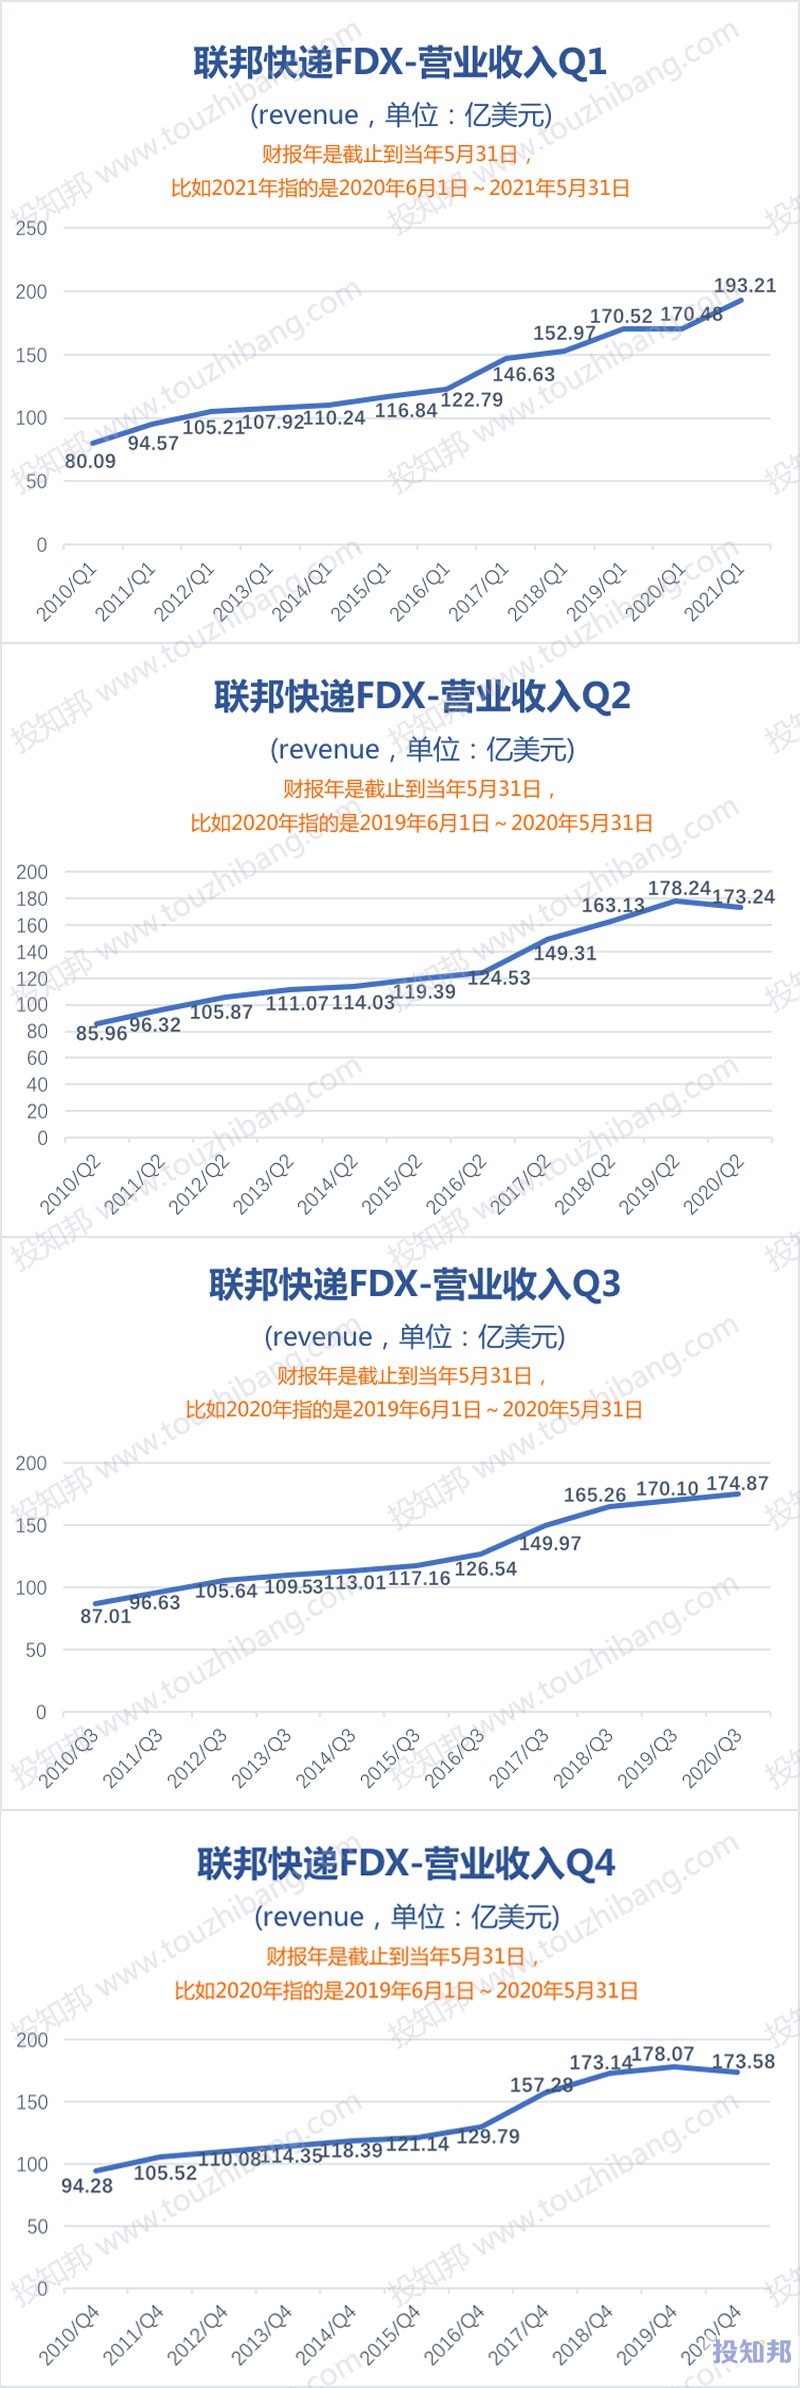 联邦快递(FDX)财报数据图示(2010年～2021财报年Q1，更新)